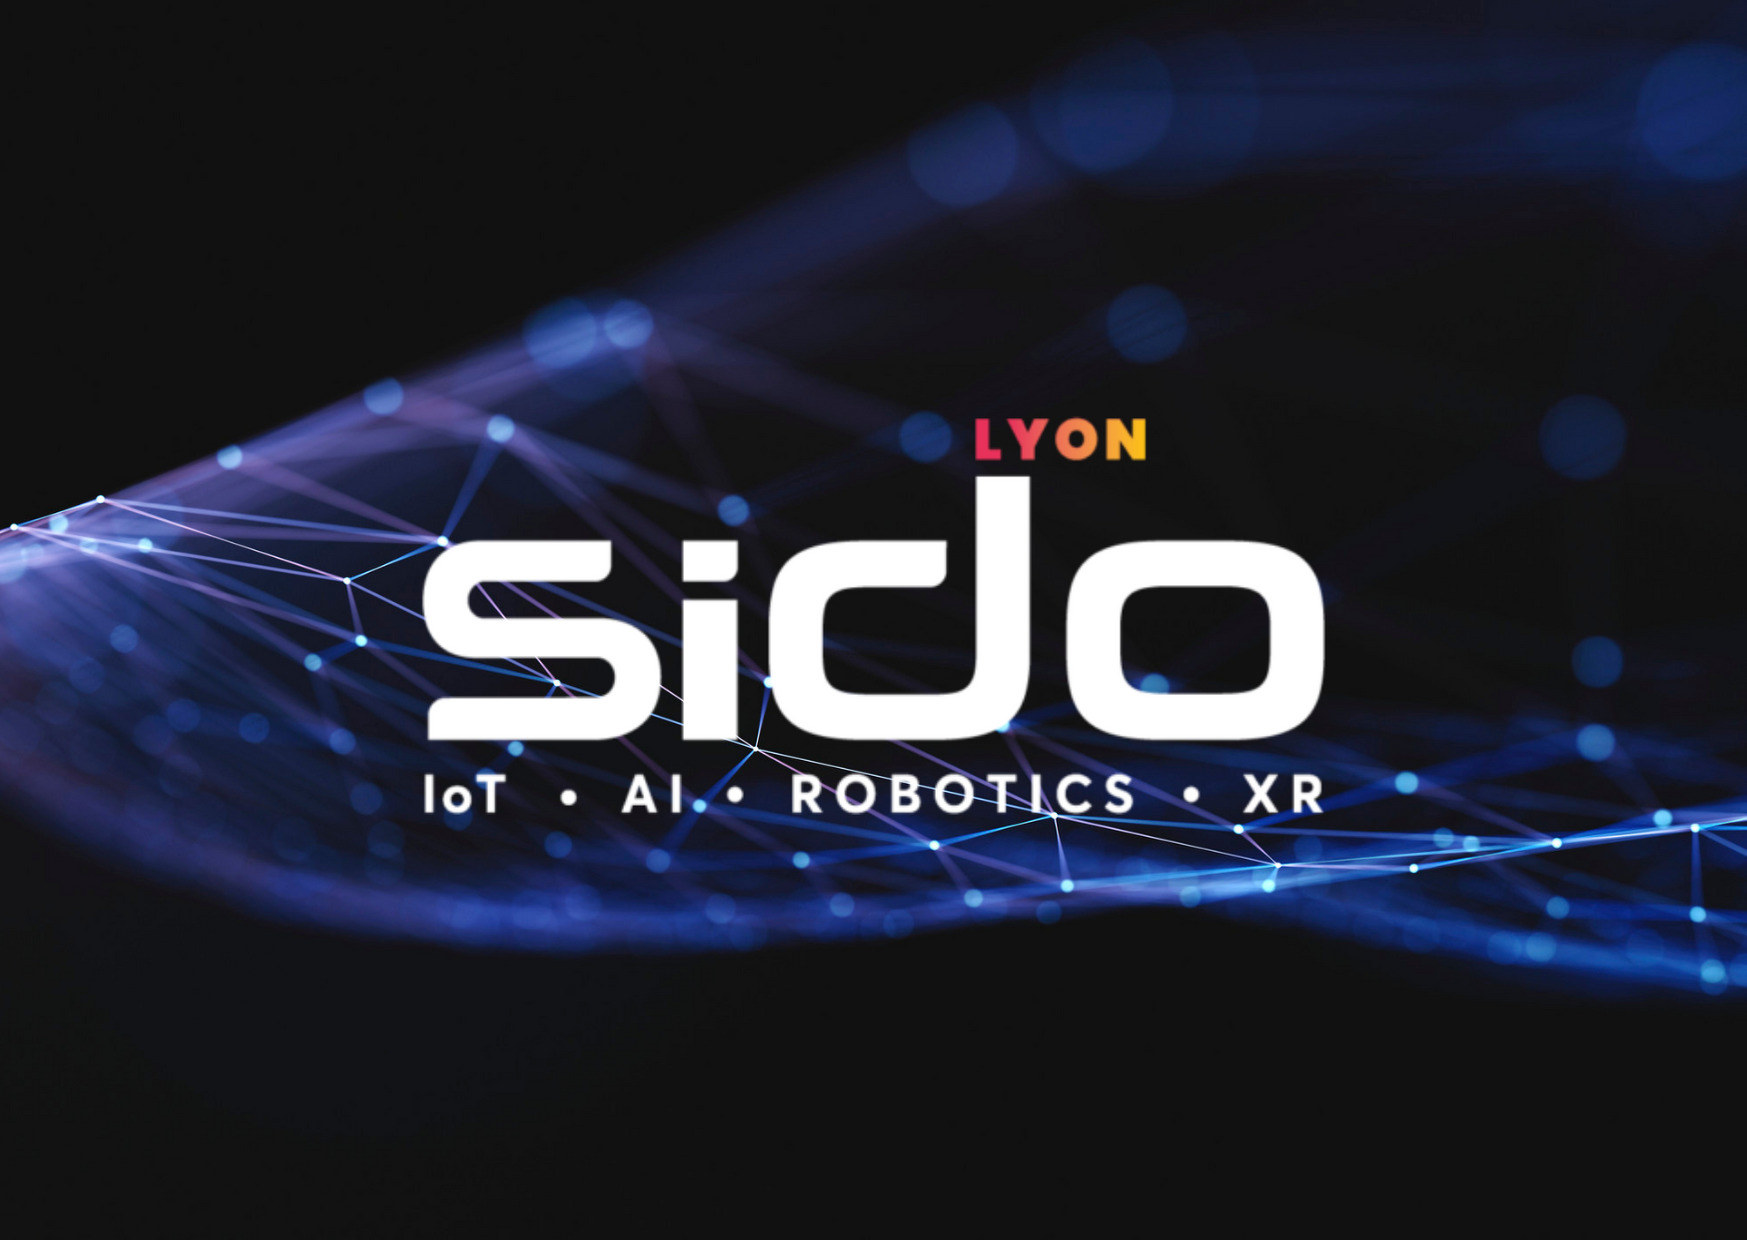 SIDO Lyon 2021